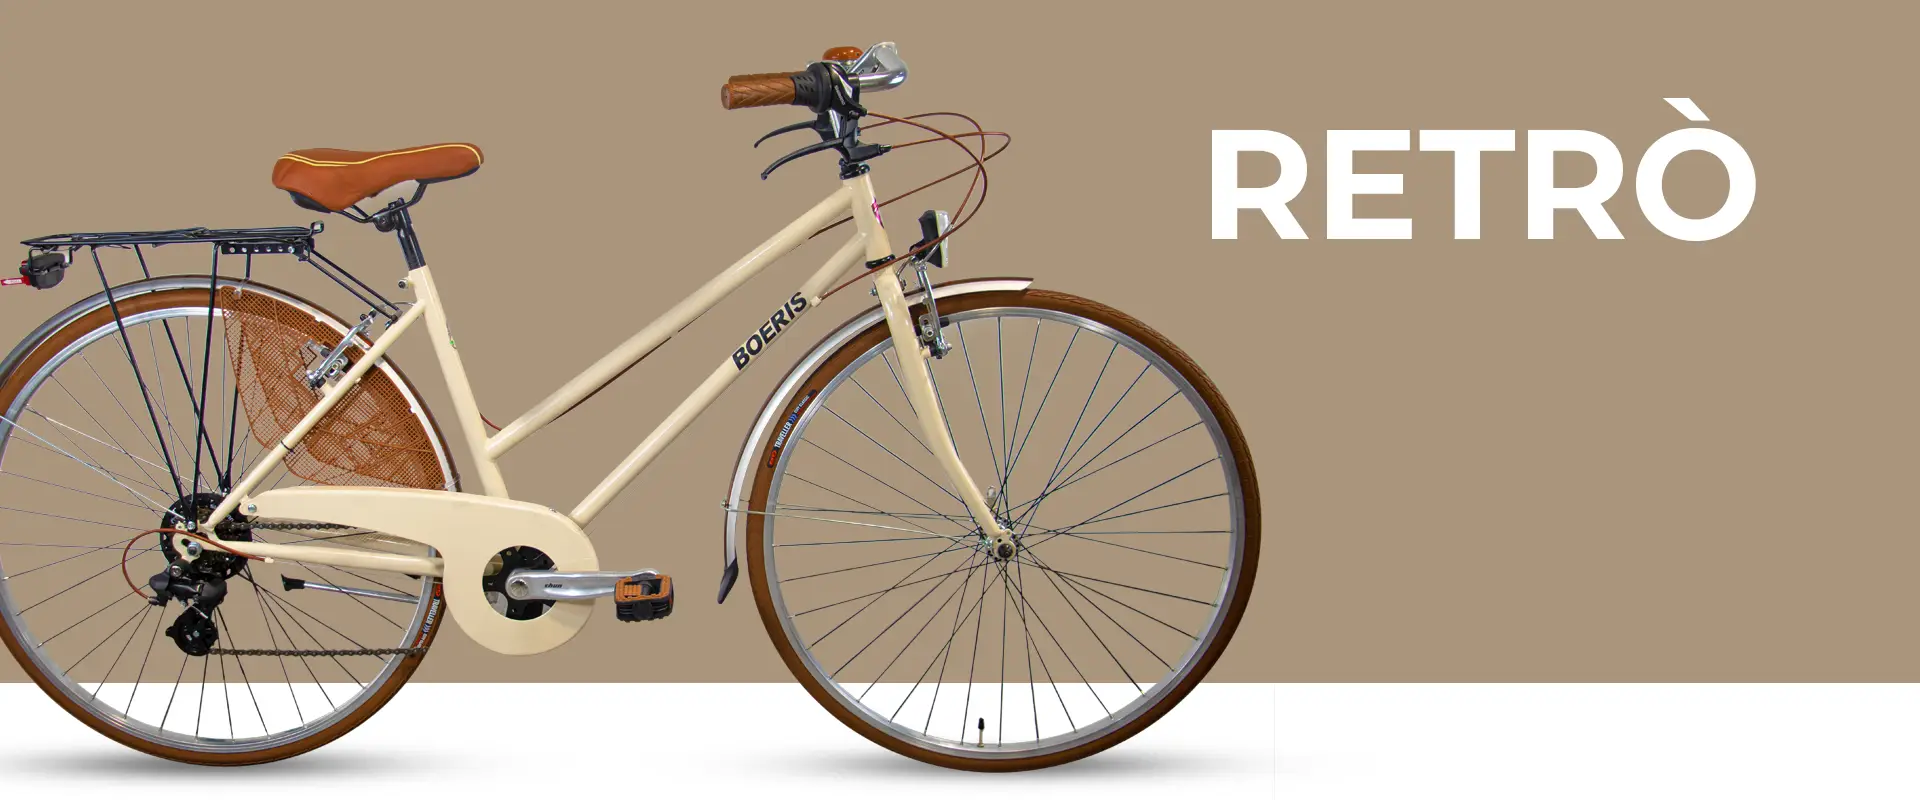 City Bike Retrò colore Beige Boeris Bikes Torino con sfondo beige